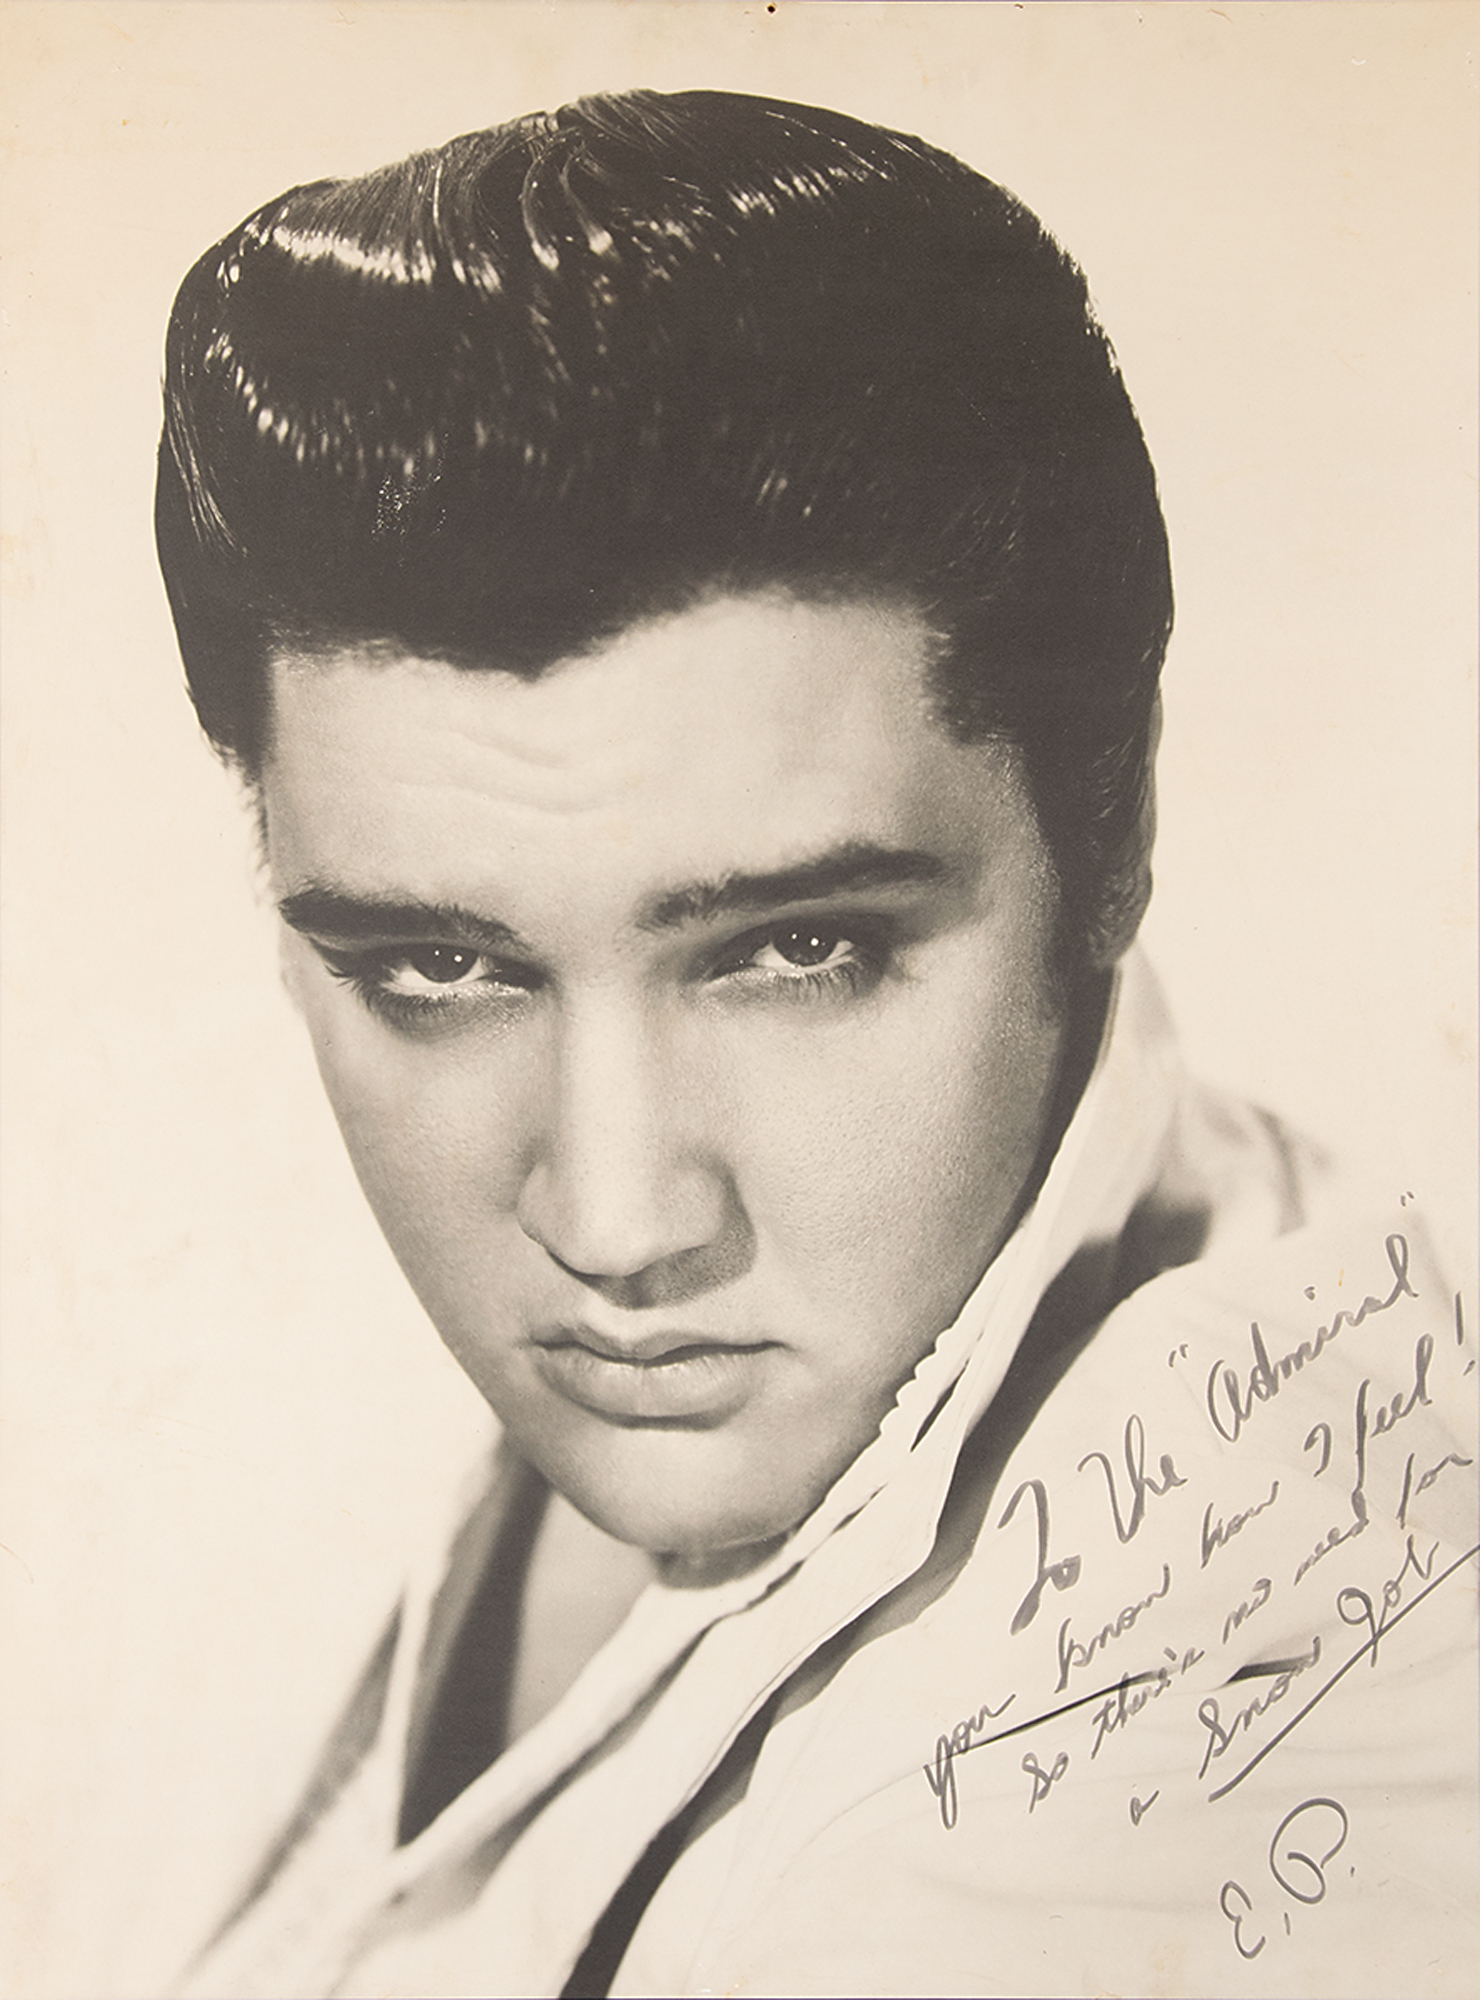 Lot #614 Elvis Presley Oversized Signed Photo to Col. Tom Parker